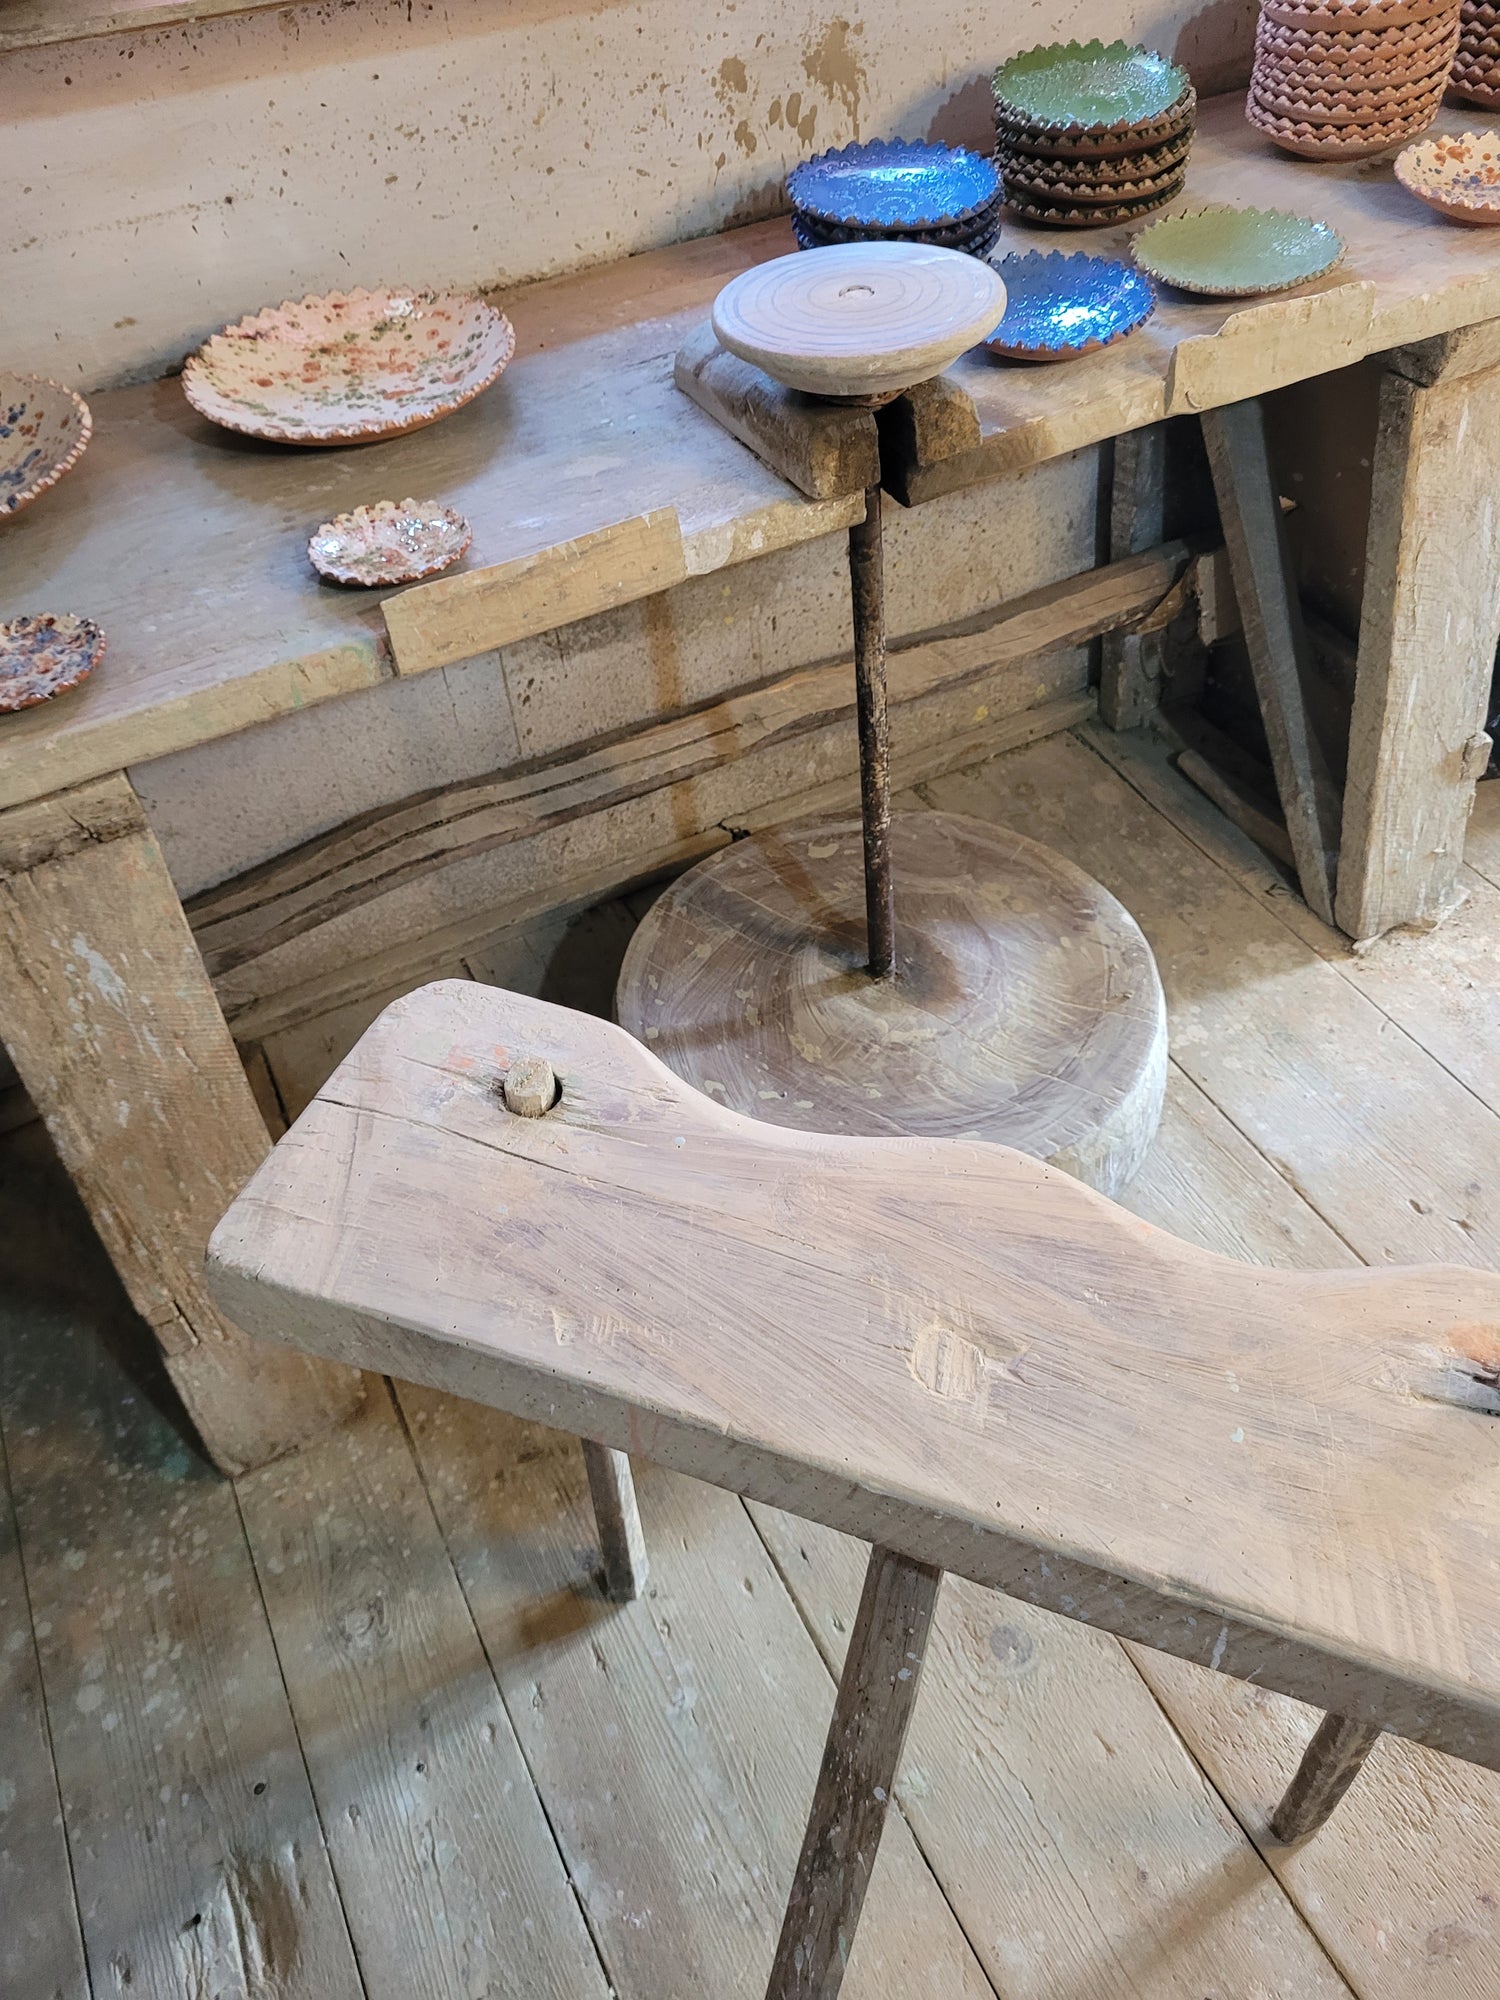 tour de potier et ceramiques artisanales dans l'atelier de petits artisans roumains